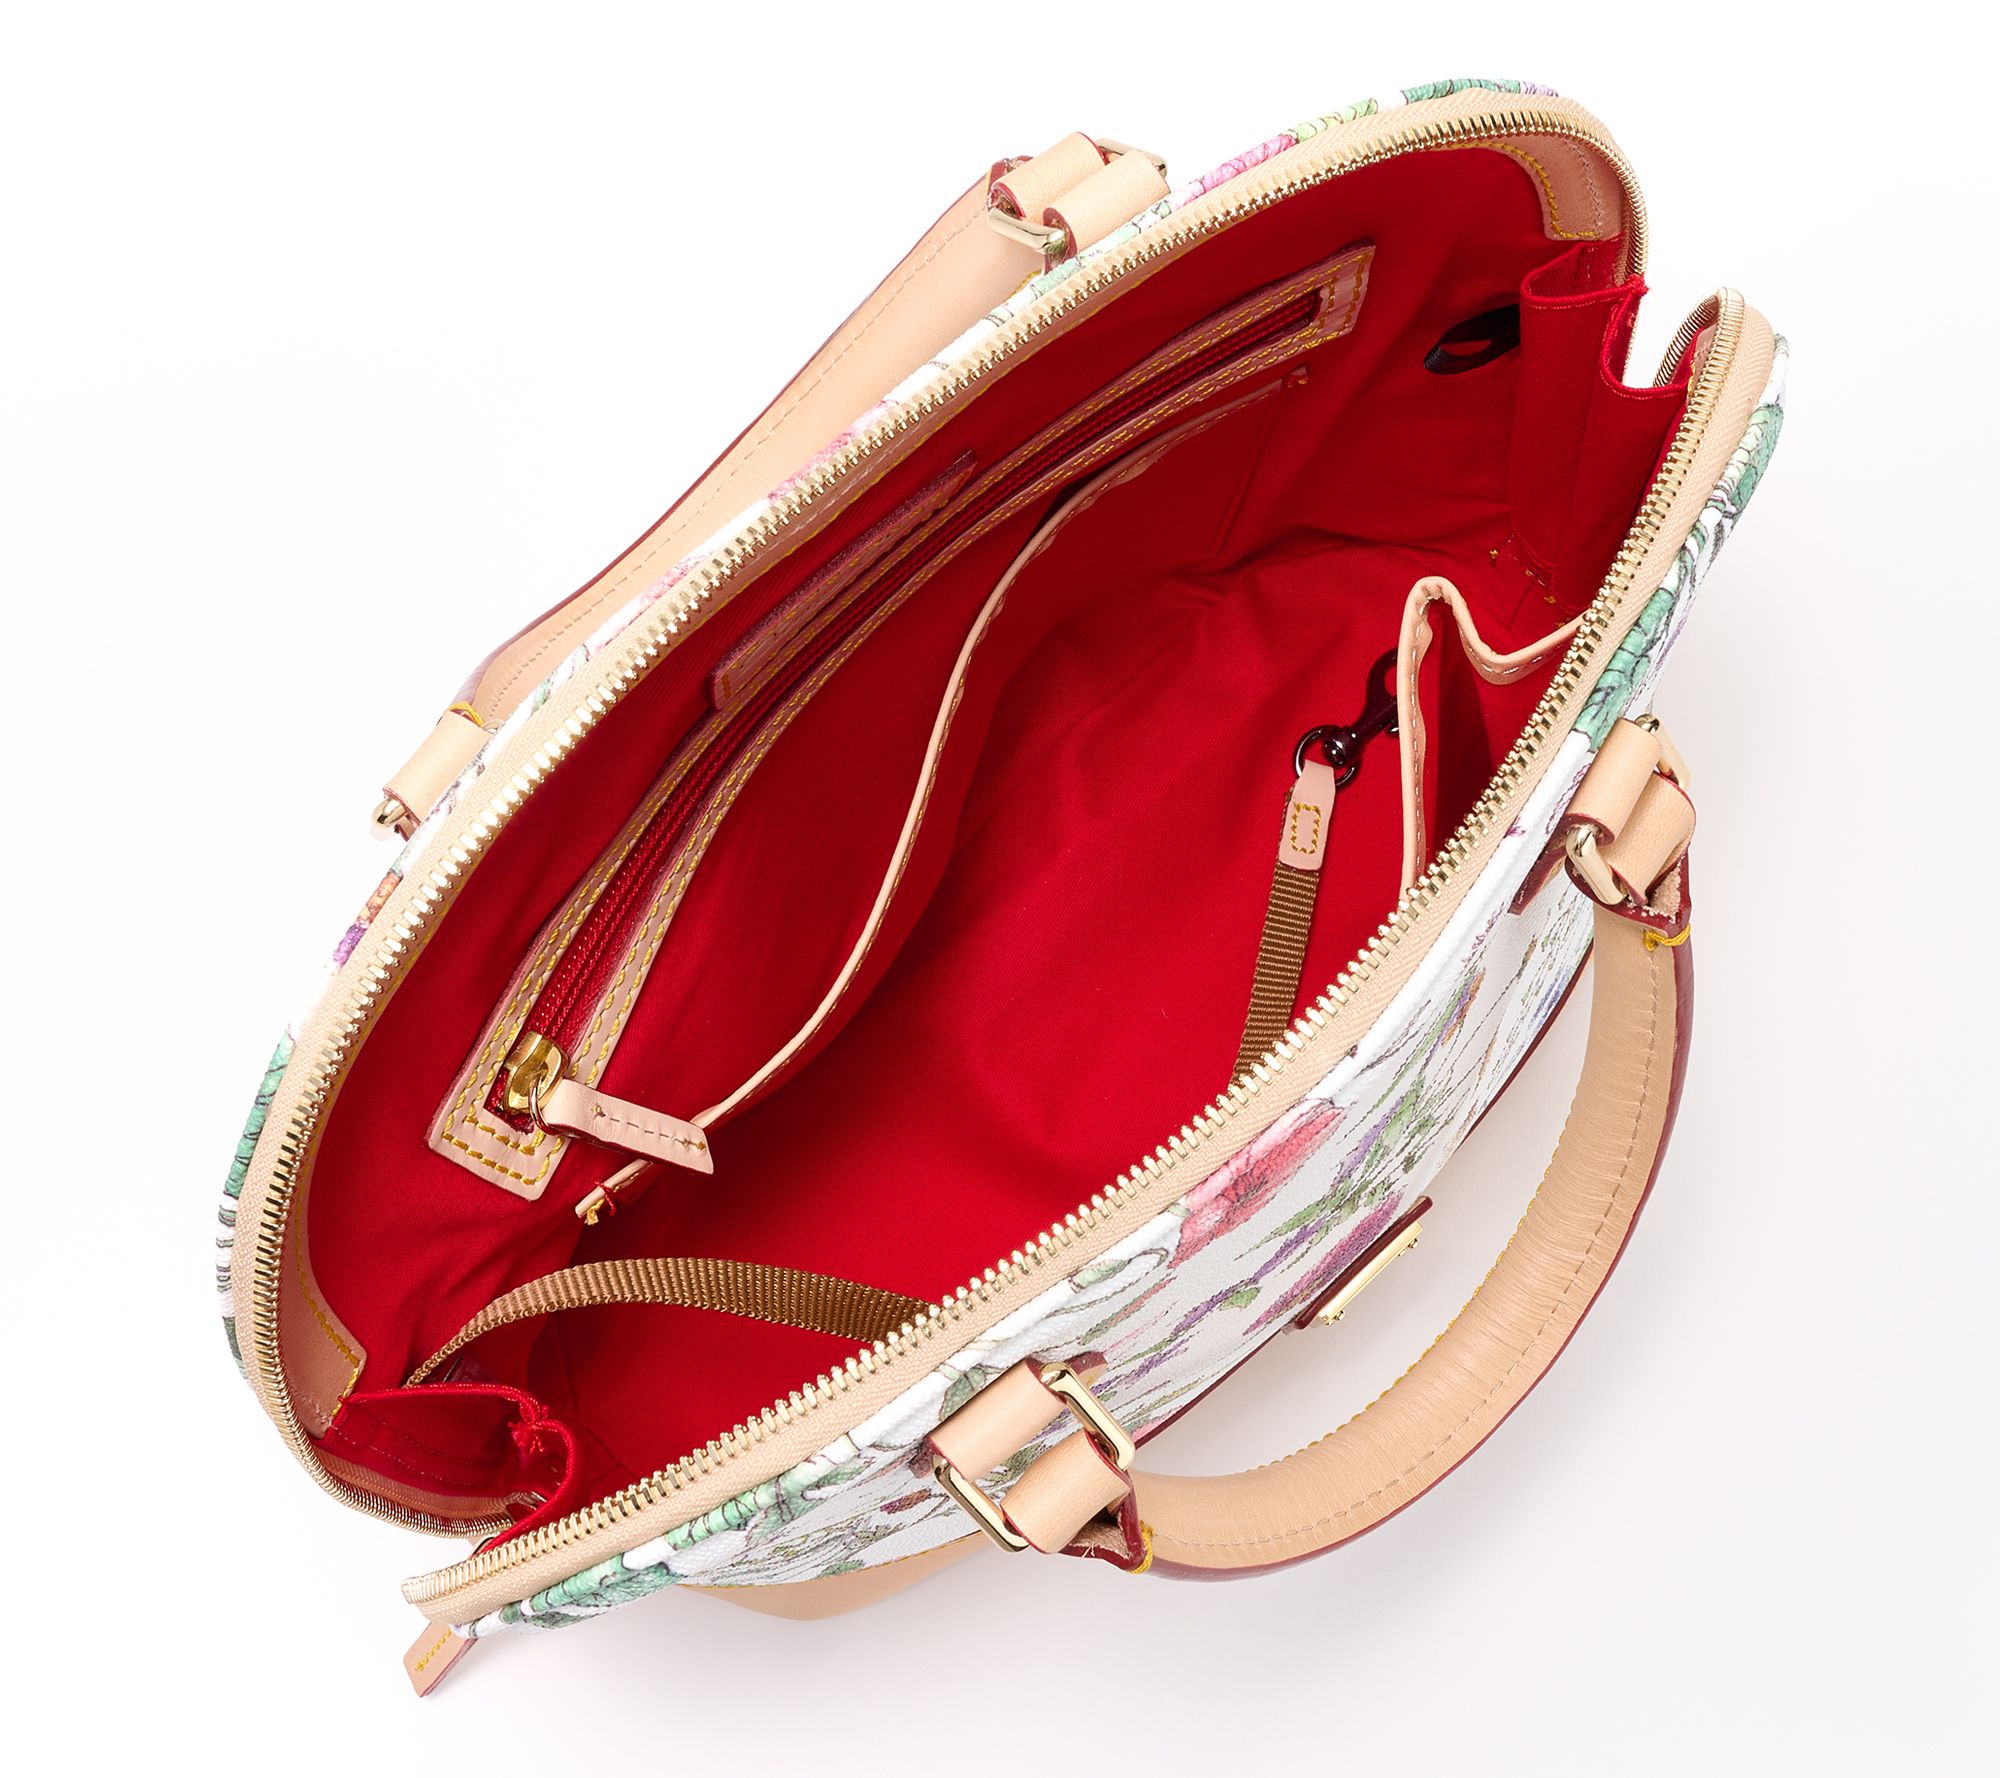 Louis Vuitton, Isaac Mizrahi Birth clear translucent pvc travel